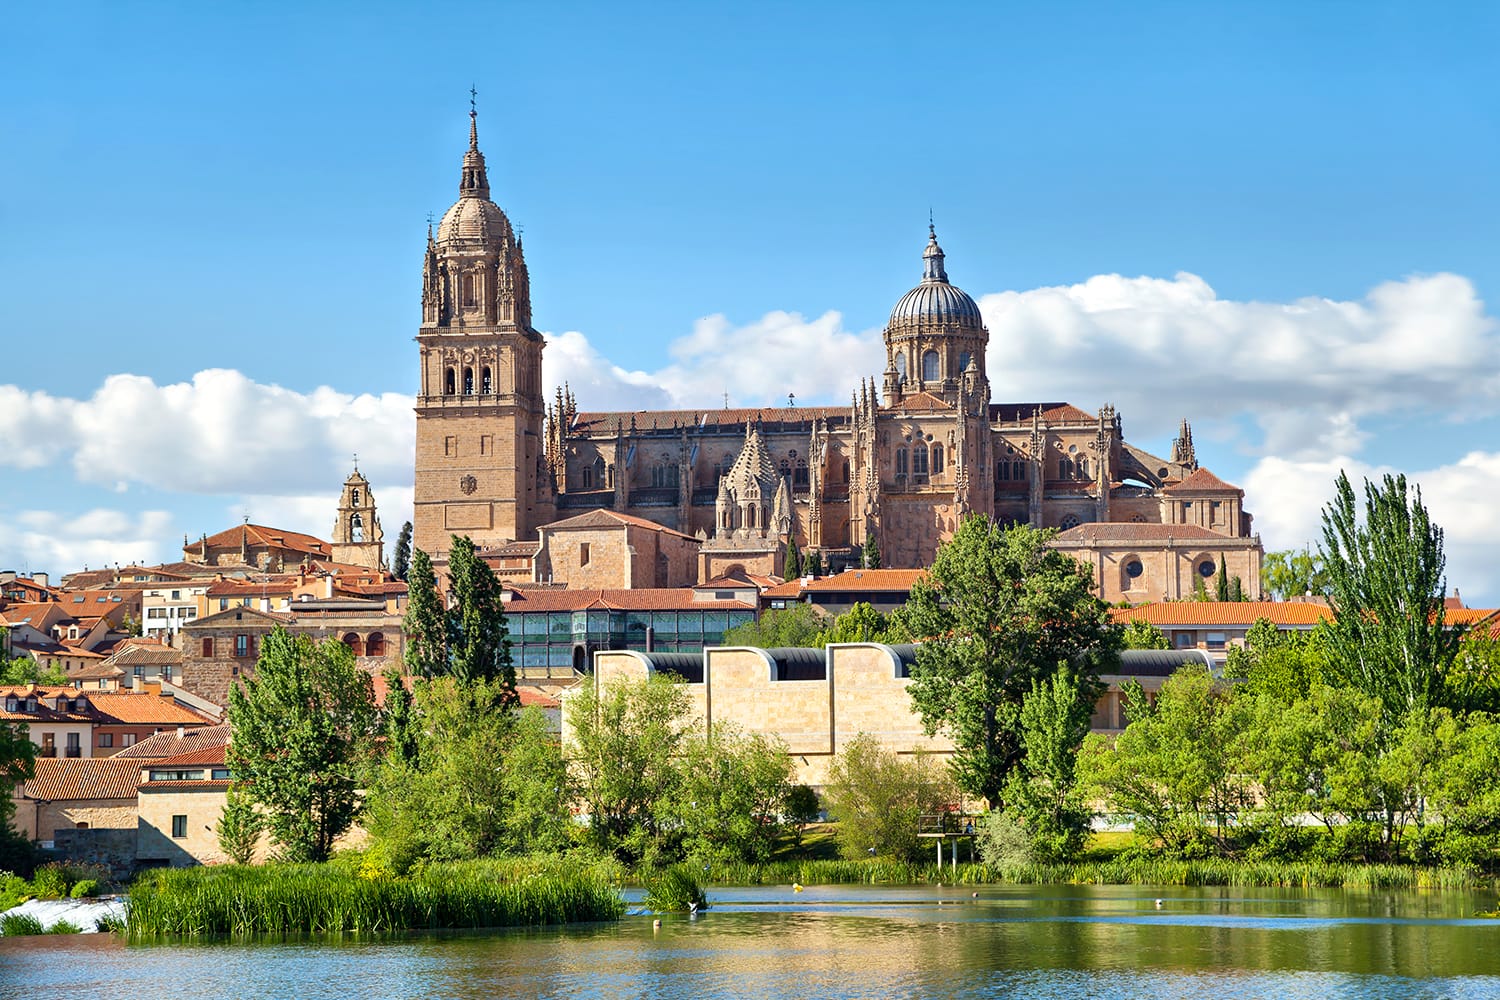 Νέος καθεδρικός ναός στη Σαλαμάνκα - άποψη από την πλευρά του ποταμού, Καστίλλη, Ισπανία